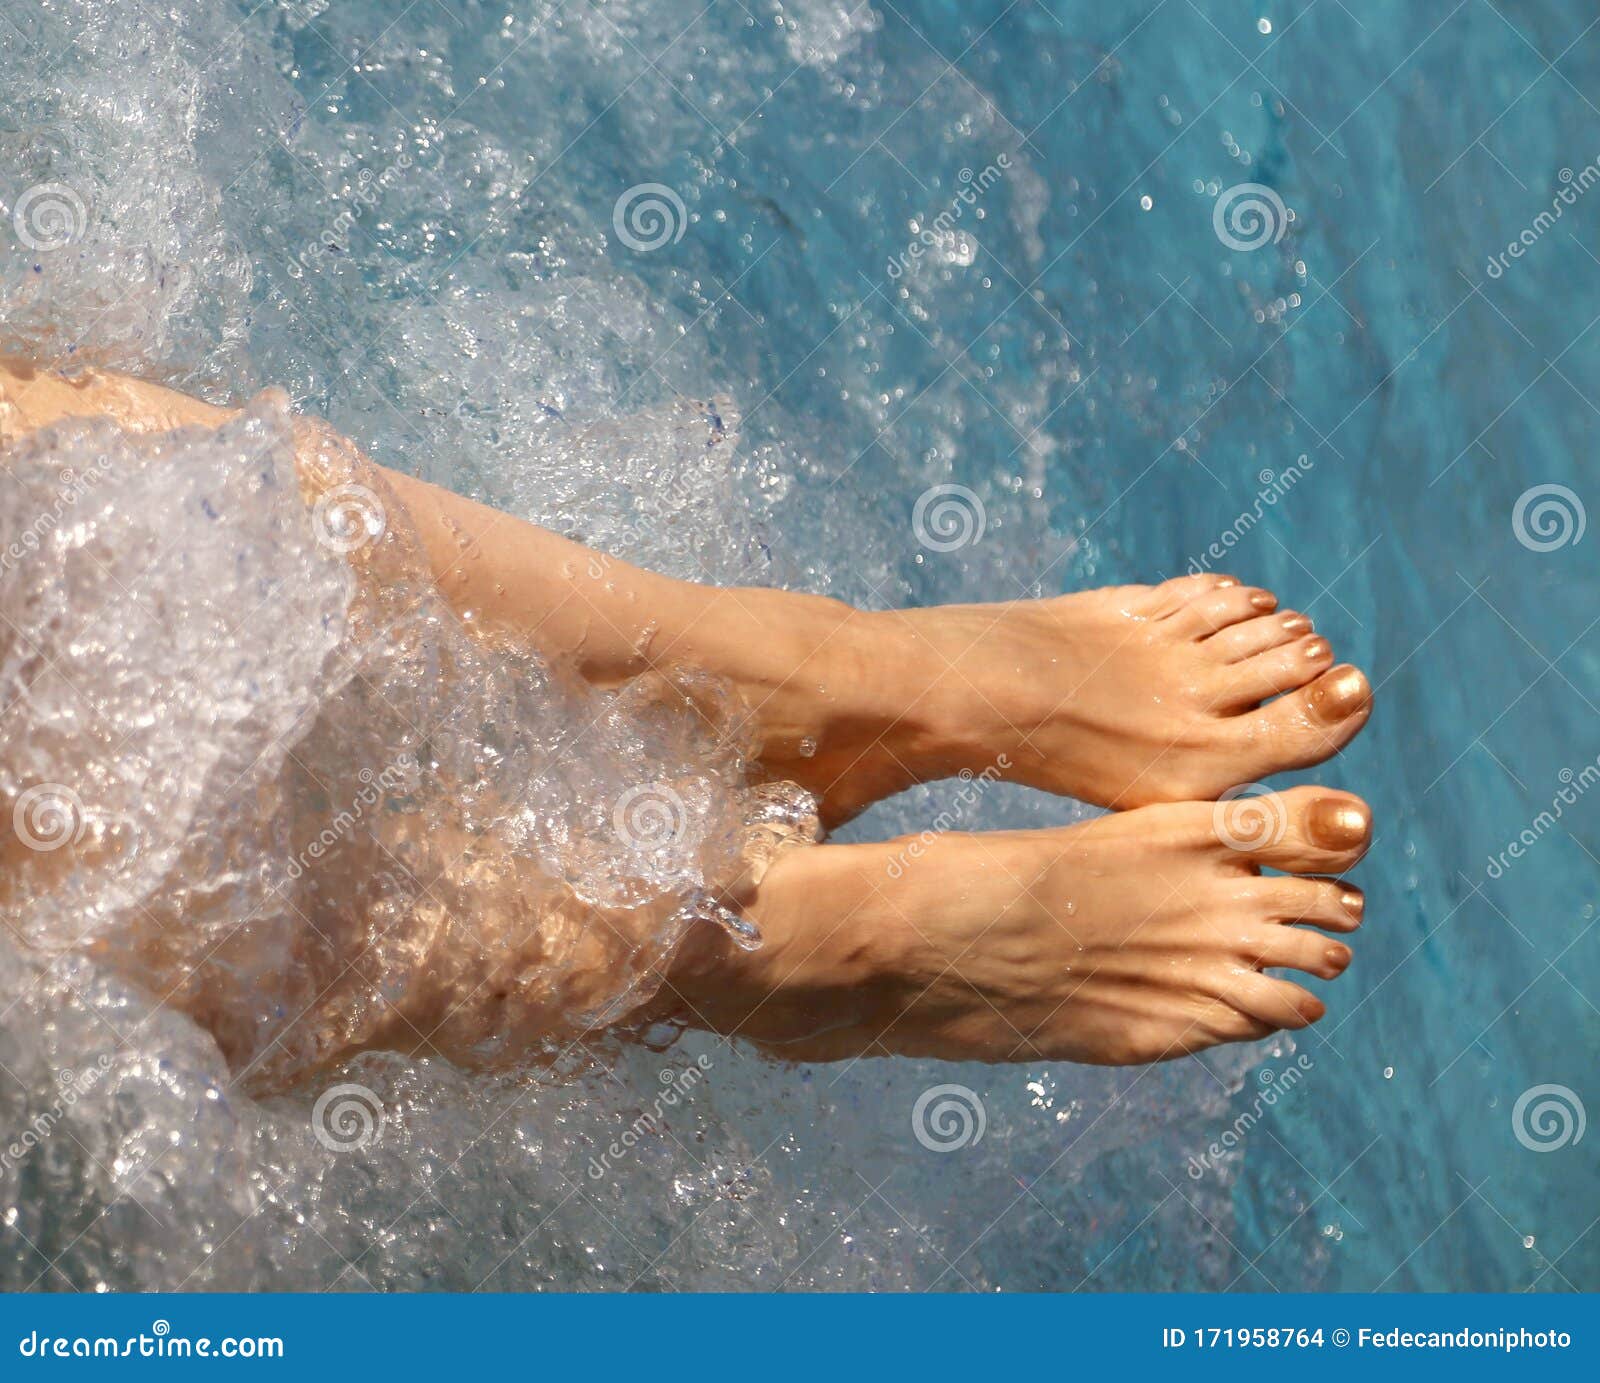 Trattamento Di Idromassaggio Per Una Donna a Piedi Nudi Con Gambe Lunghe  Fotografia Stock - Immagine di trattamento, scalzo: 171958764